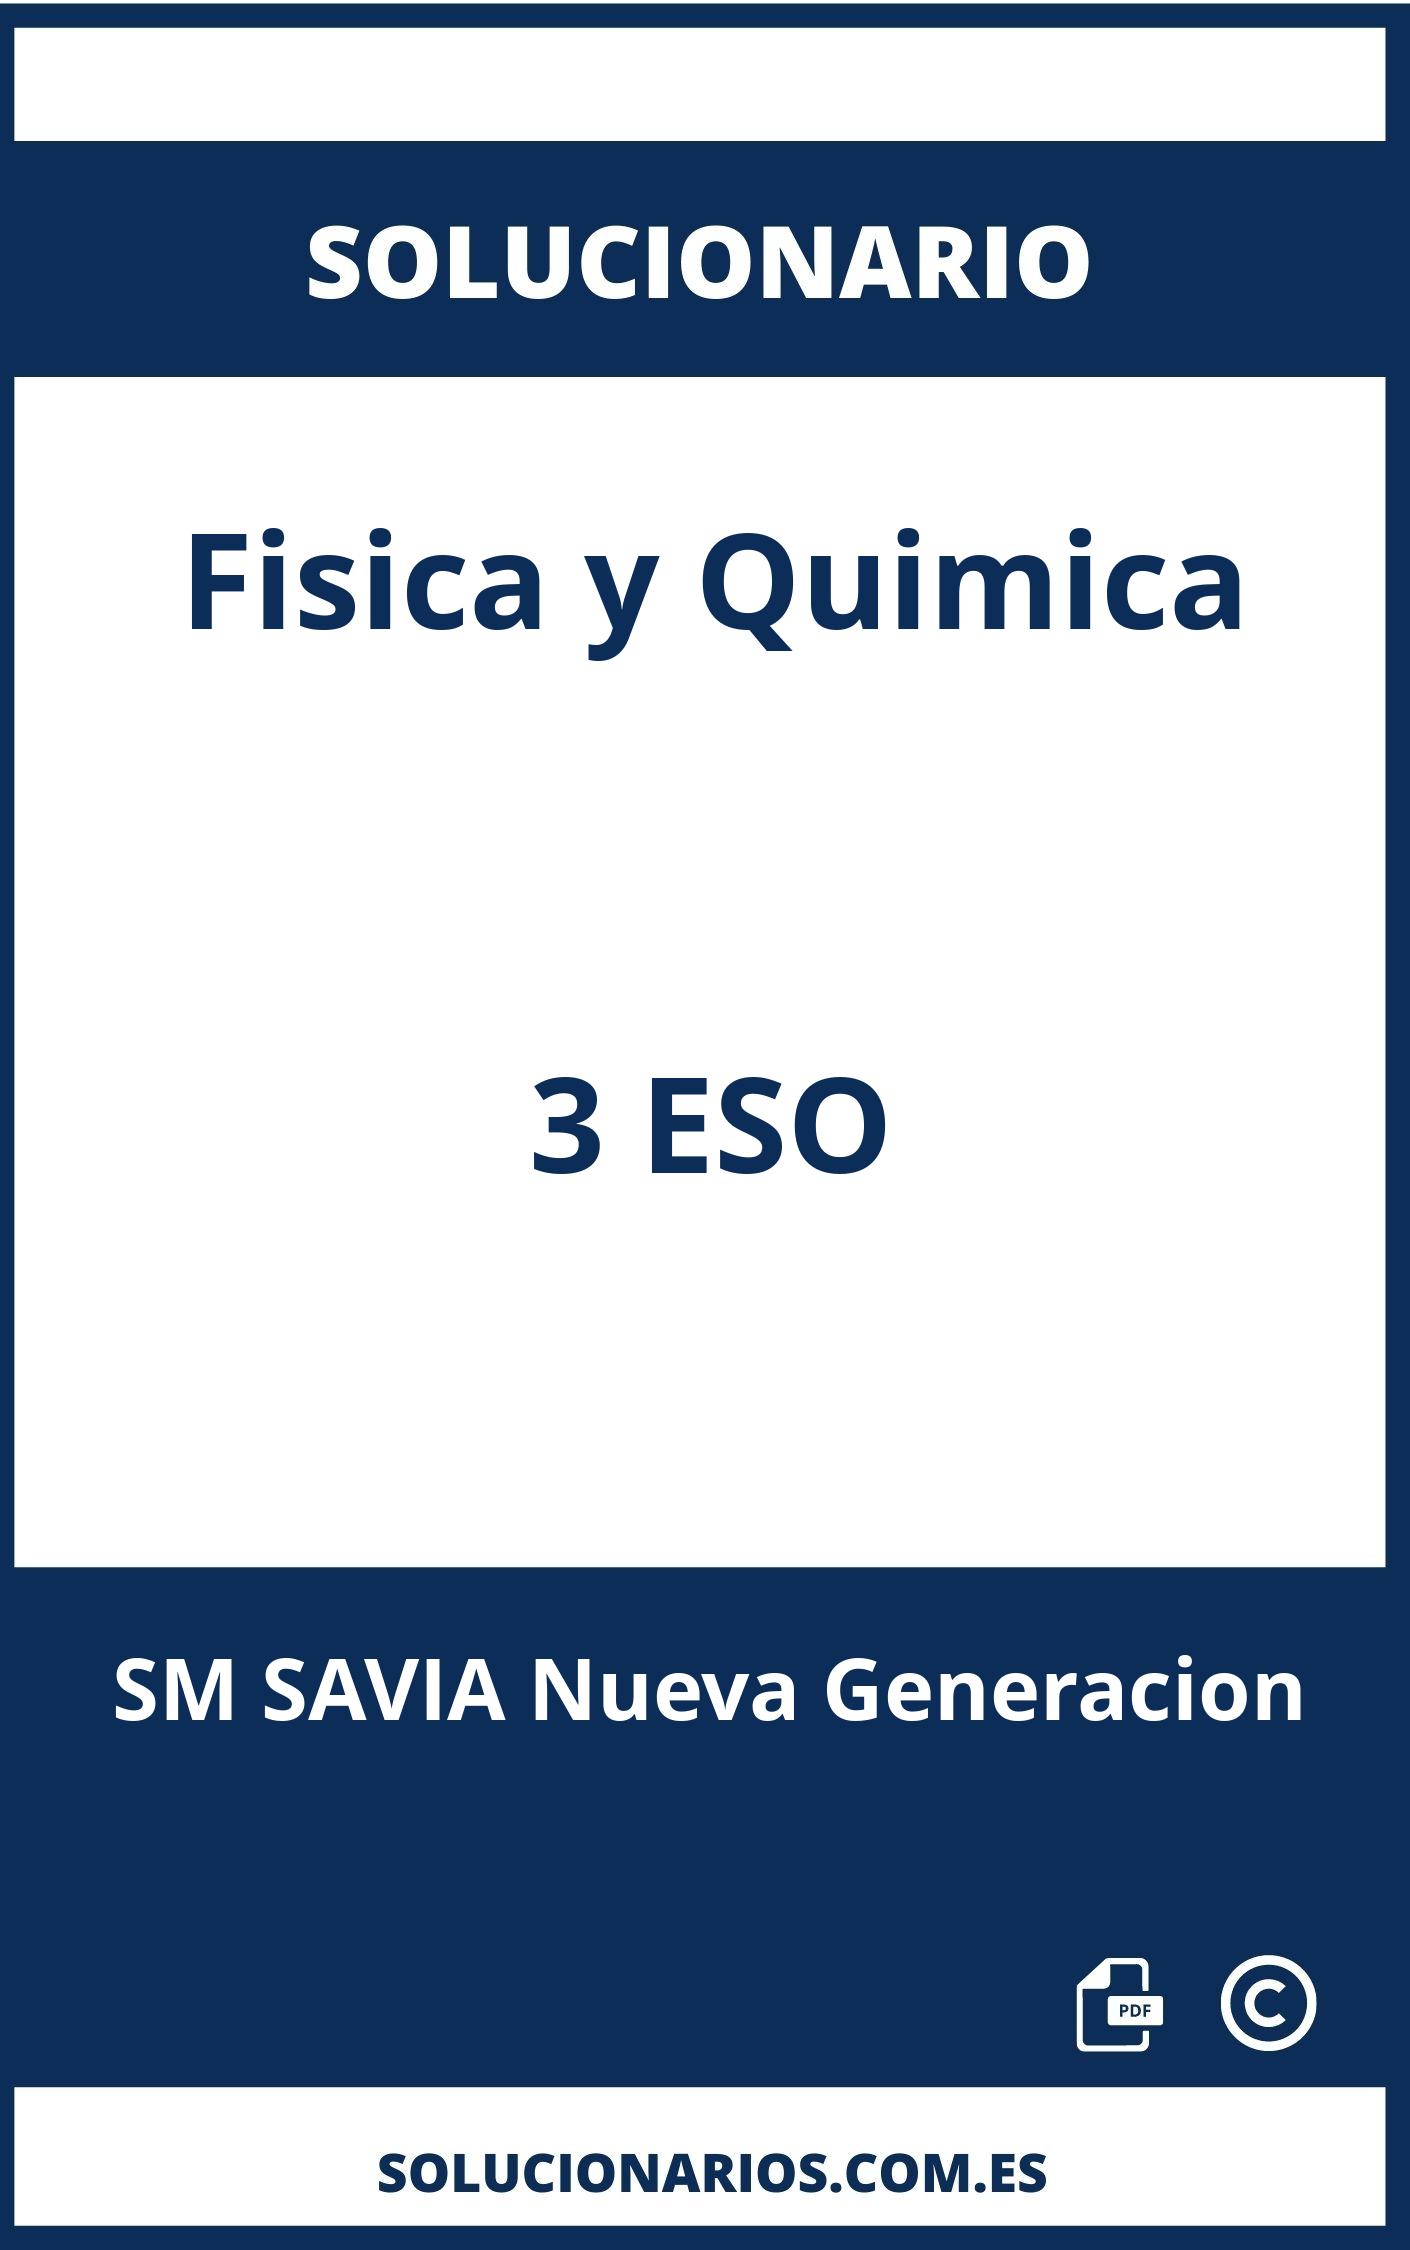 Solucionario Fisica y Quimica 3 ESO SM SAVIA Nueva Generacion